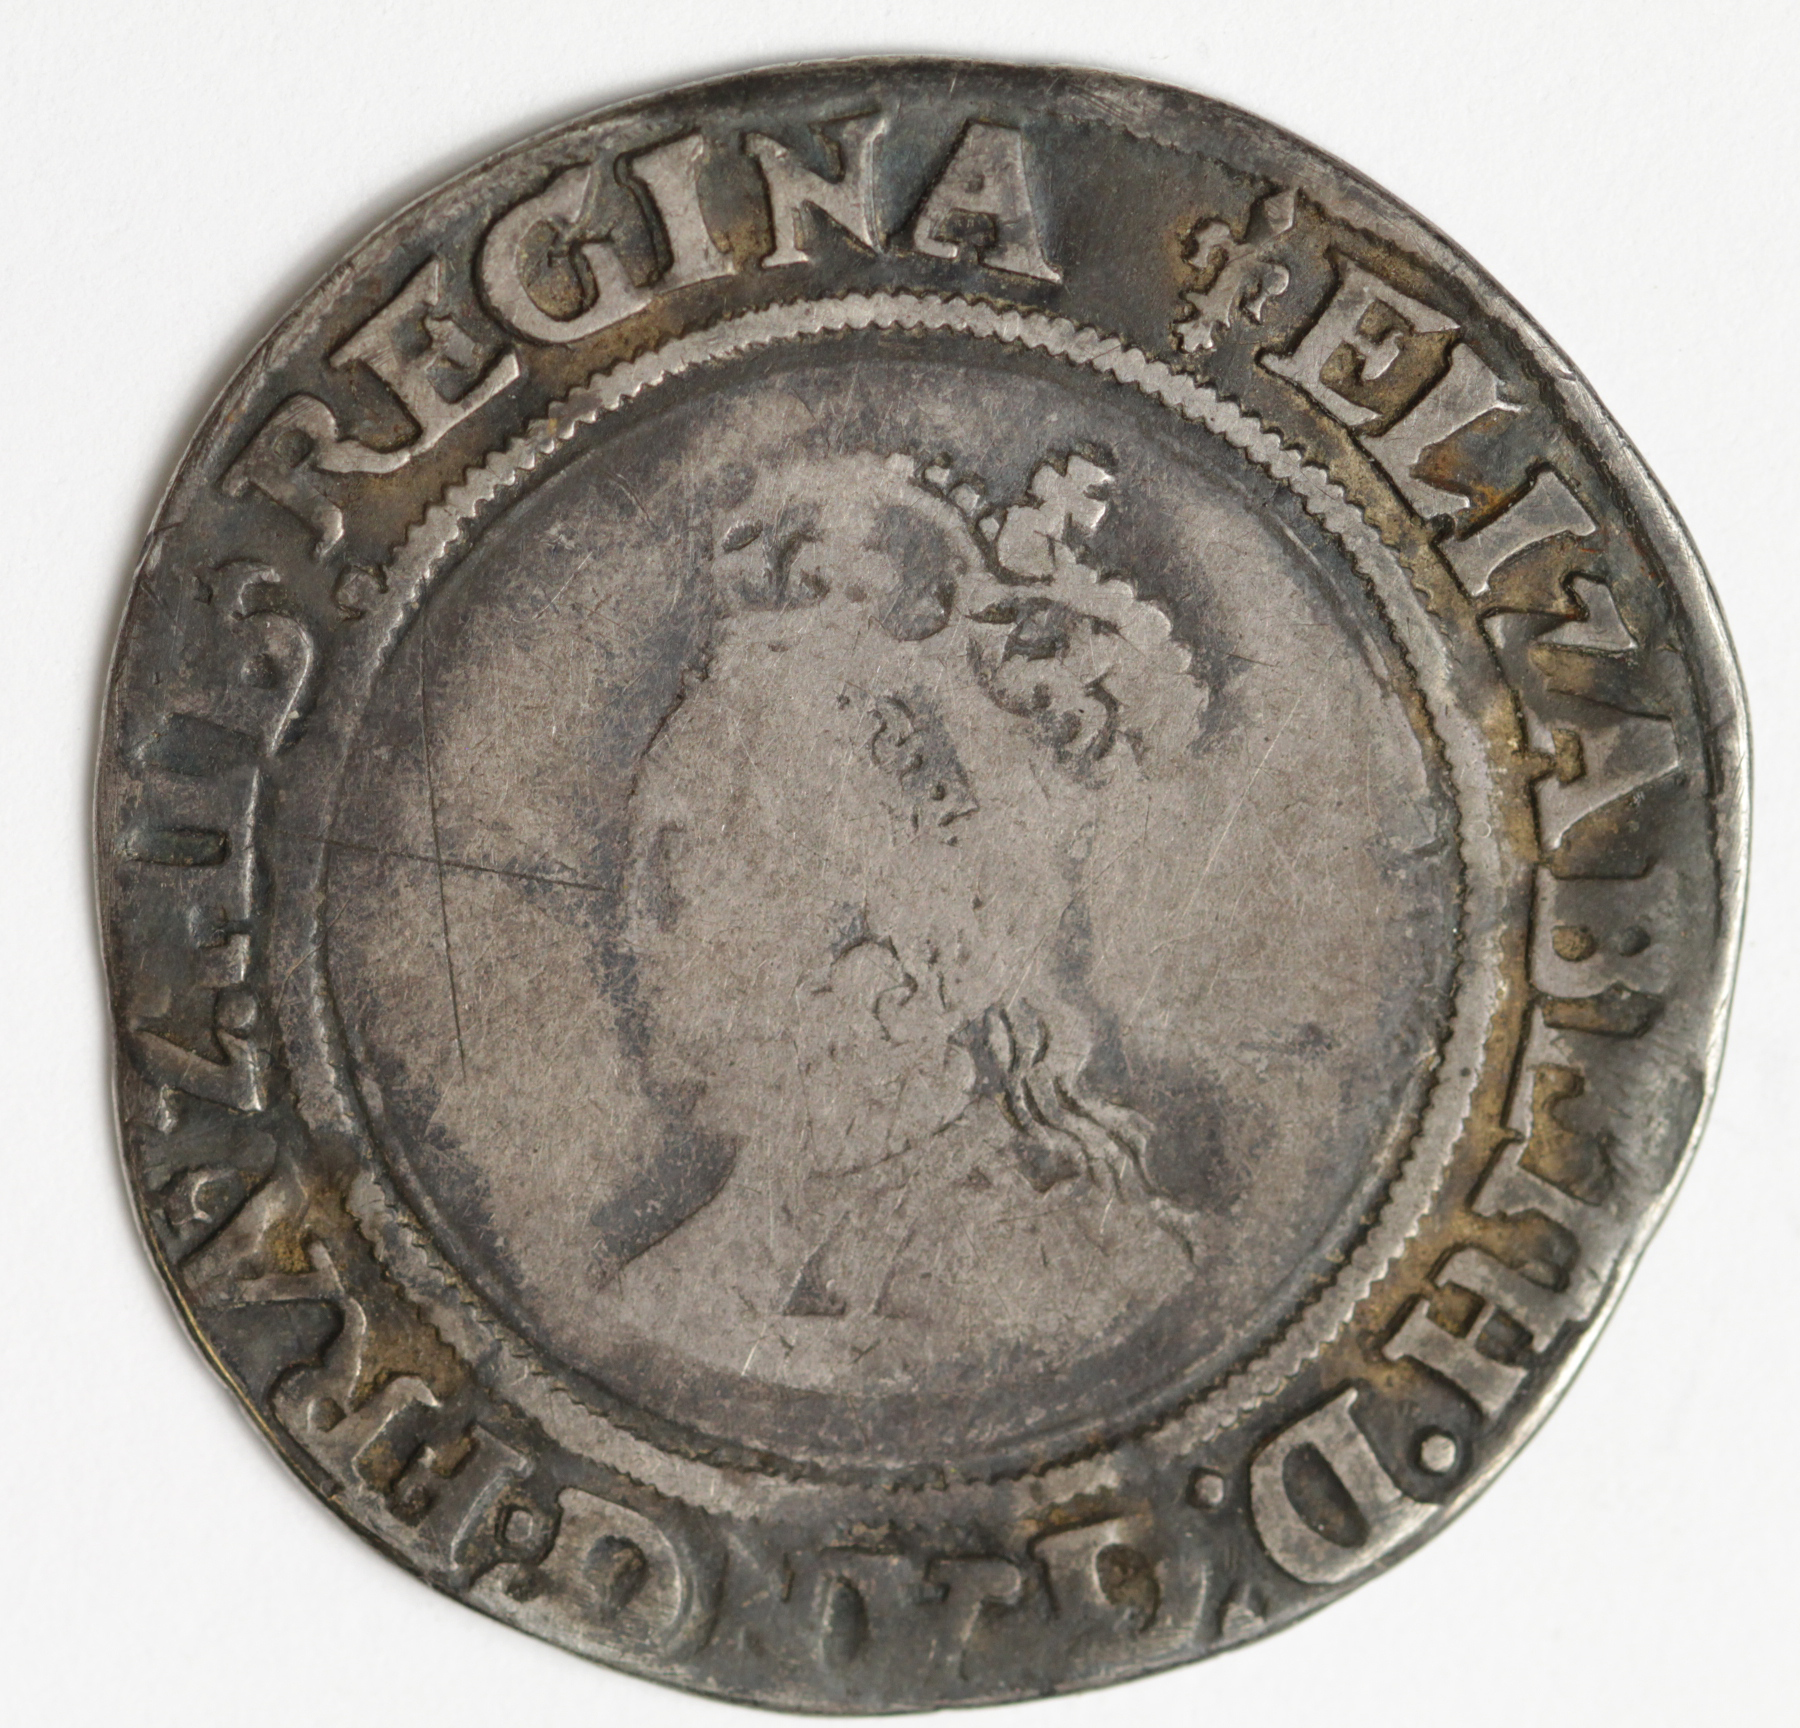 Elizabeth I silver shilling, First Issue 1559-1560, mm. Lis, reads:- ELIZABETH, Spink 2549, full,